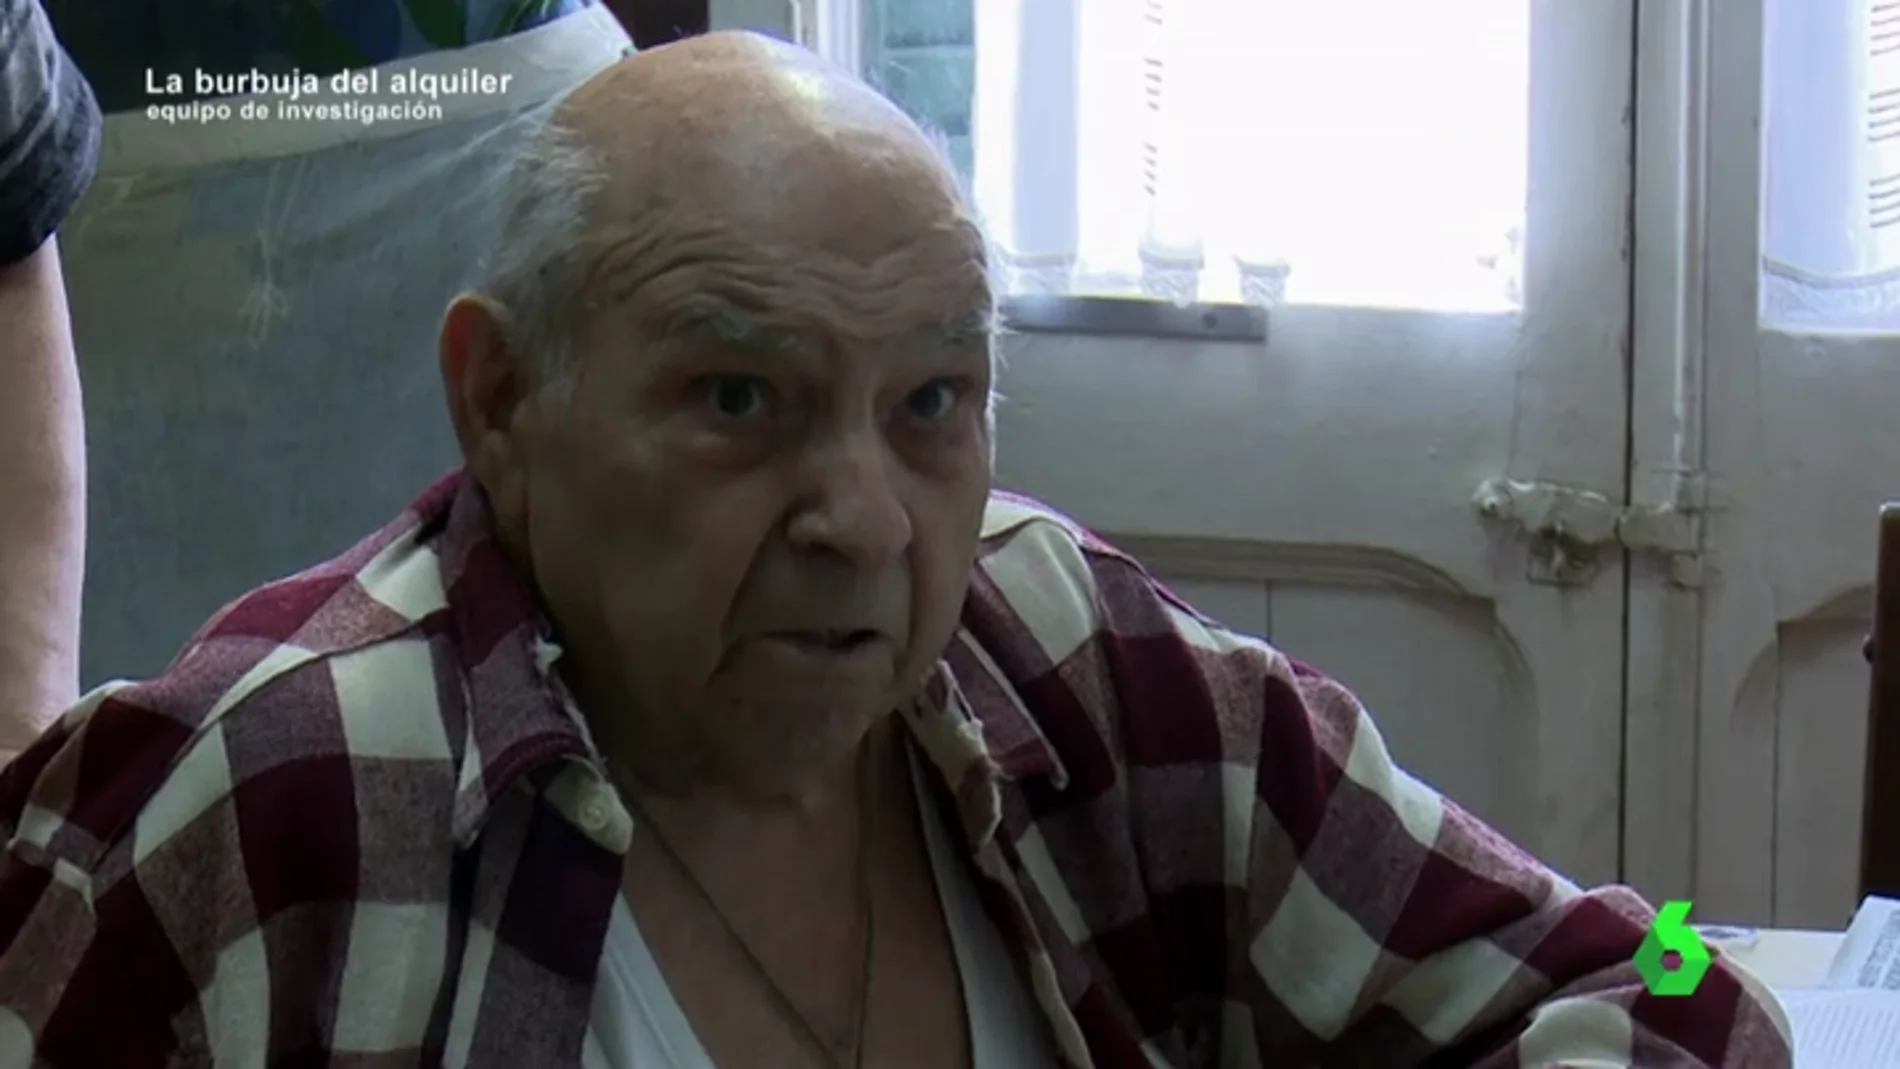 Un fondo buitre amenaza con echar de su casa a Lluis, de 88 años: "Si tocan el ascensor no podré salir"